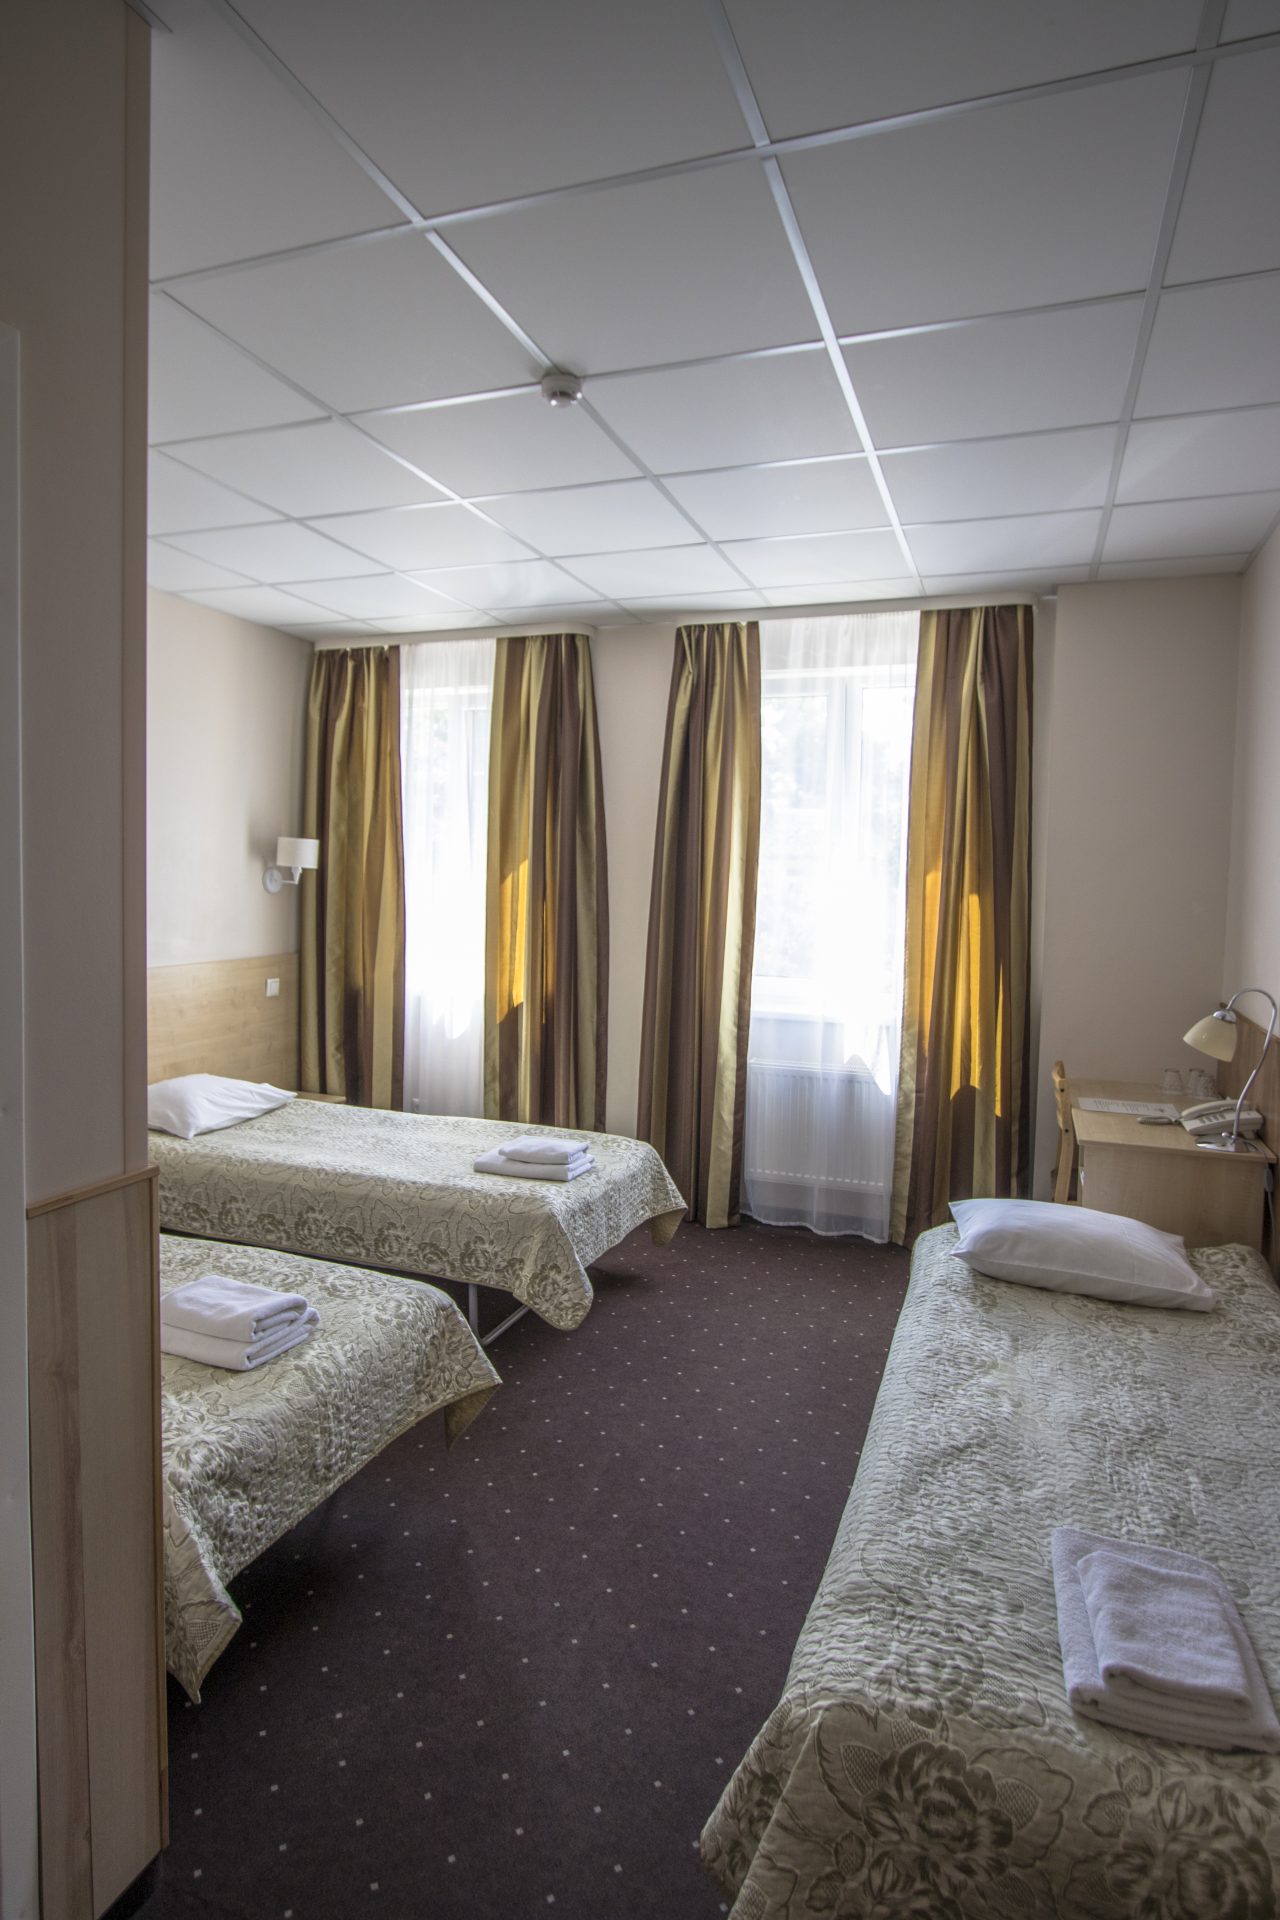 BEST_HOTEL_TRPL_ROOM стандартный трипл (TRPL) – трехместный номер с тремя раздельными кроватями